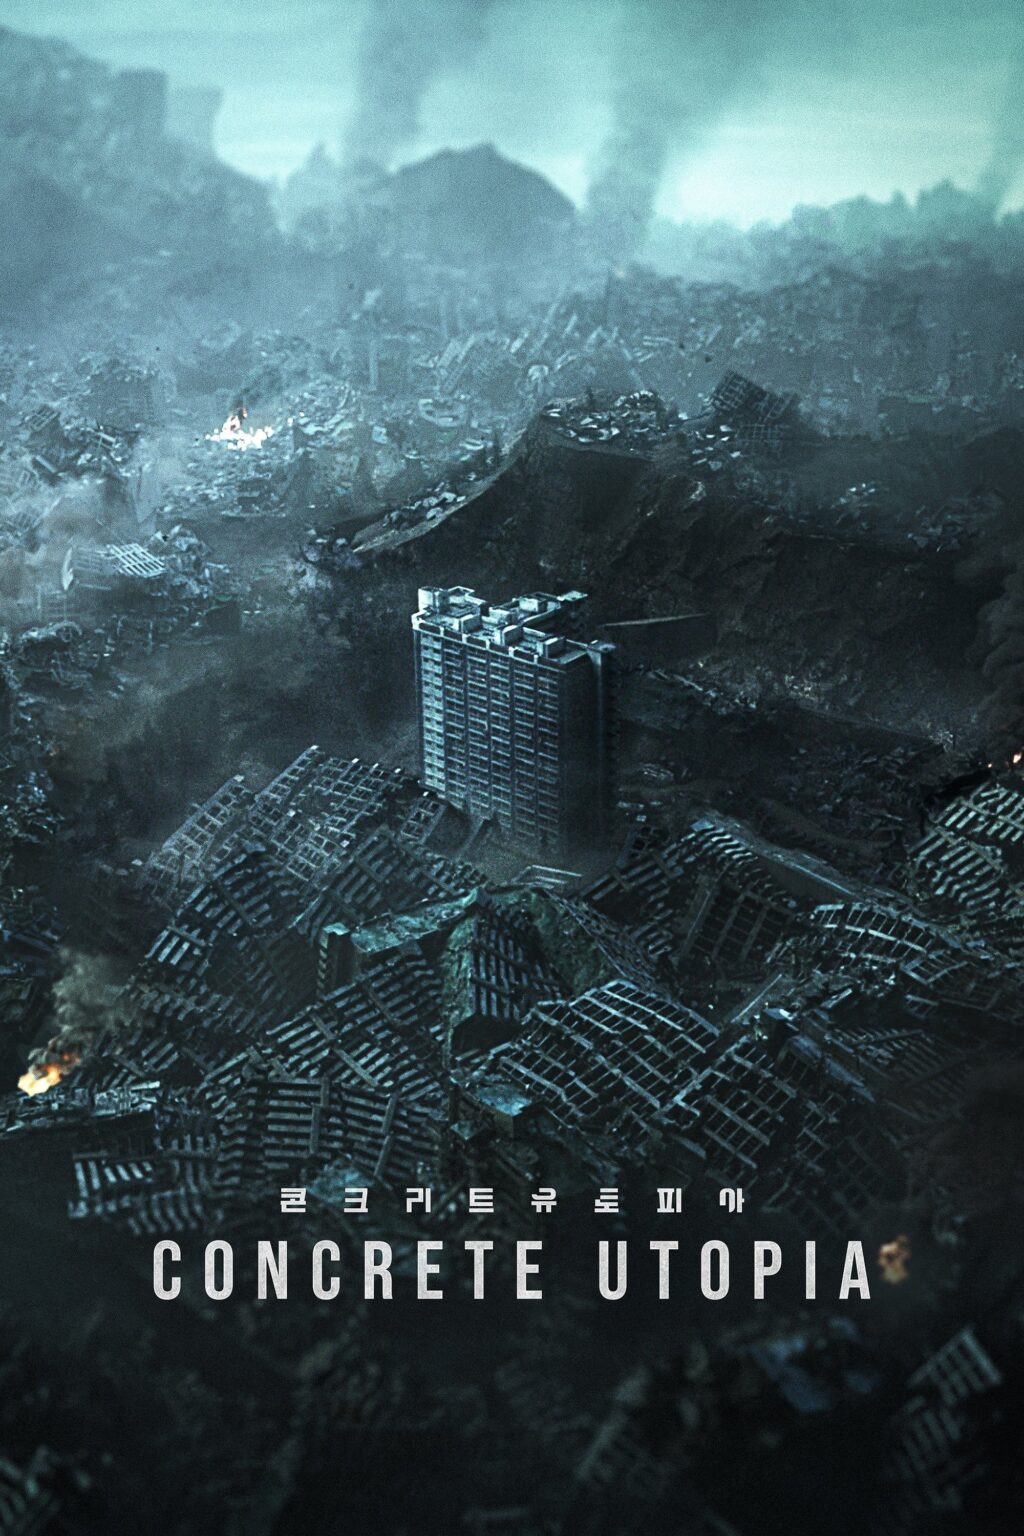 Poster for the movie "Concrete Utopia"